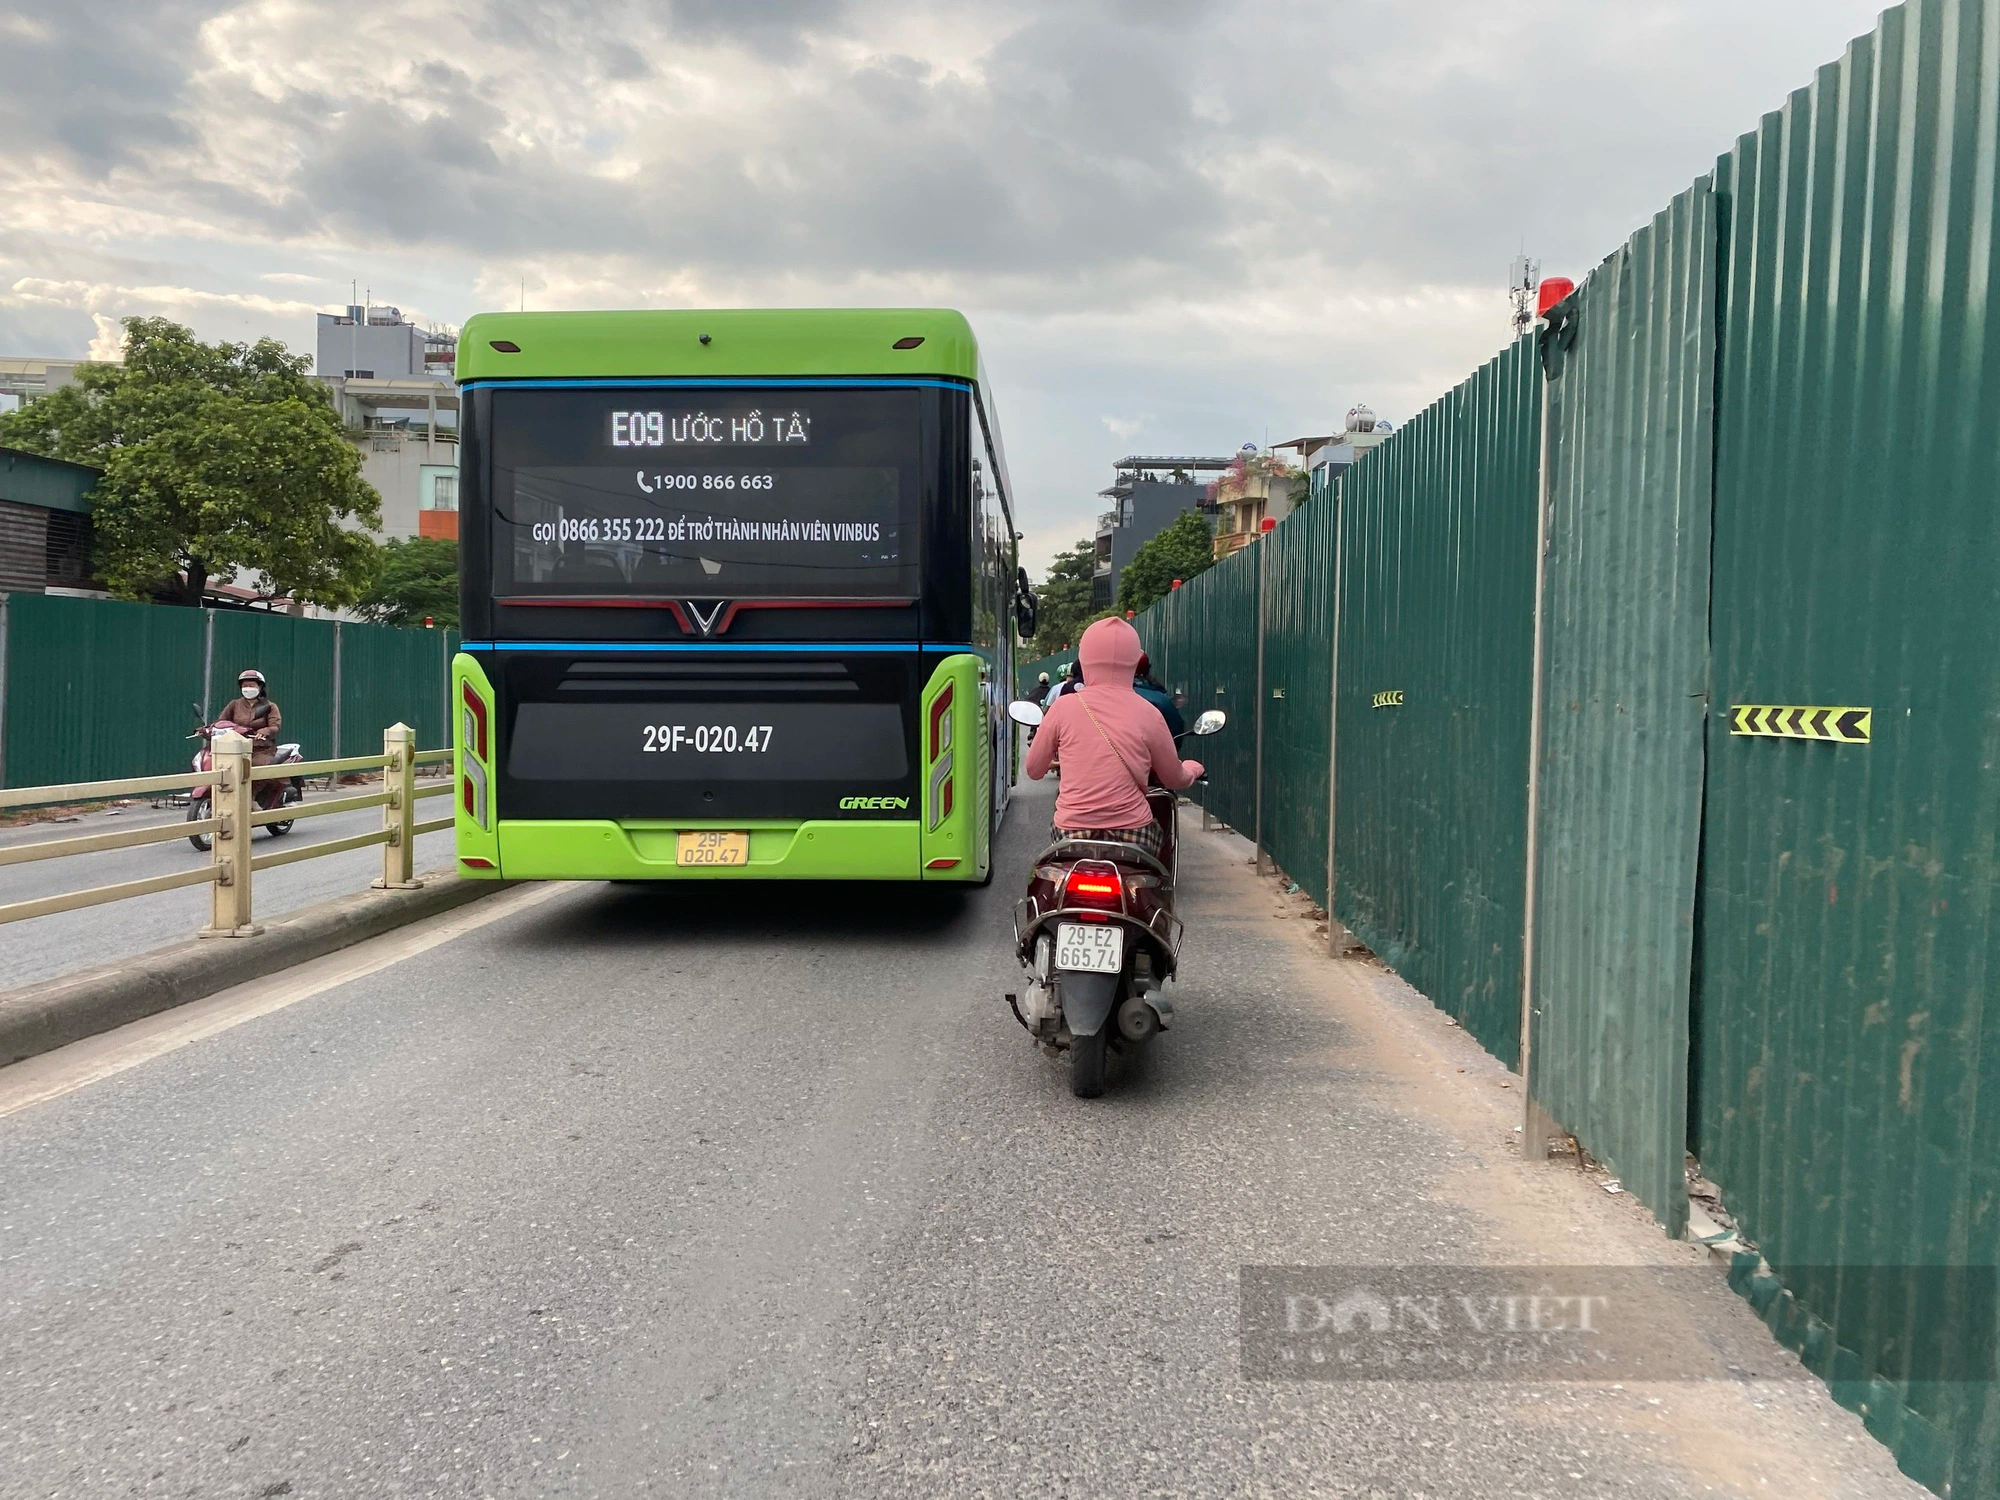 Hà Nội: Dự án chậm tiến độ khiến người dân phải đón xe buýt giữa đường - Ảnh 4.